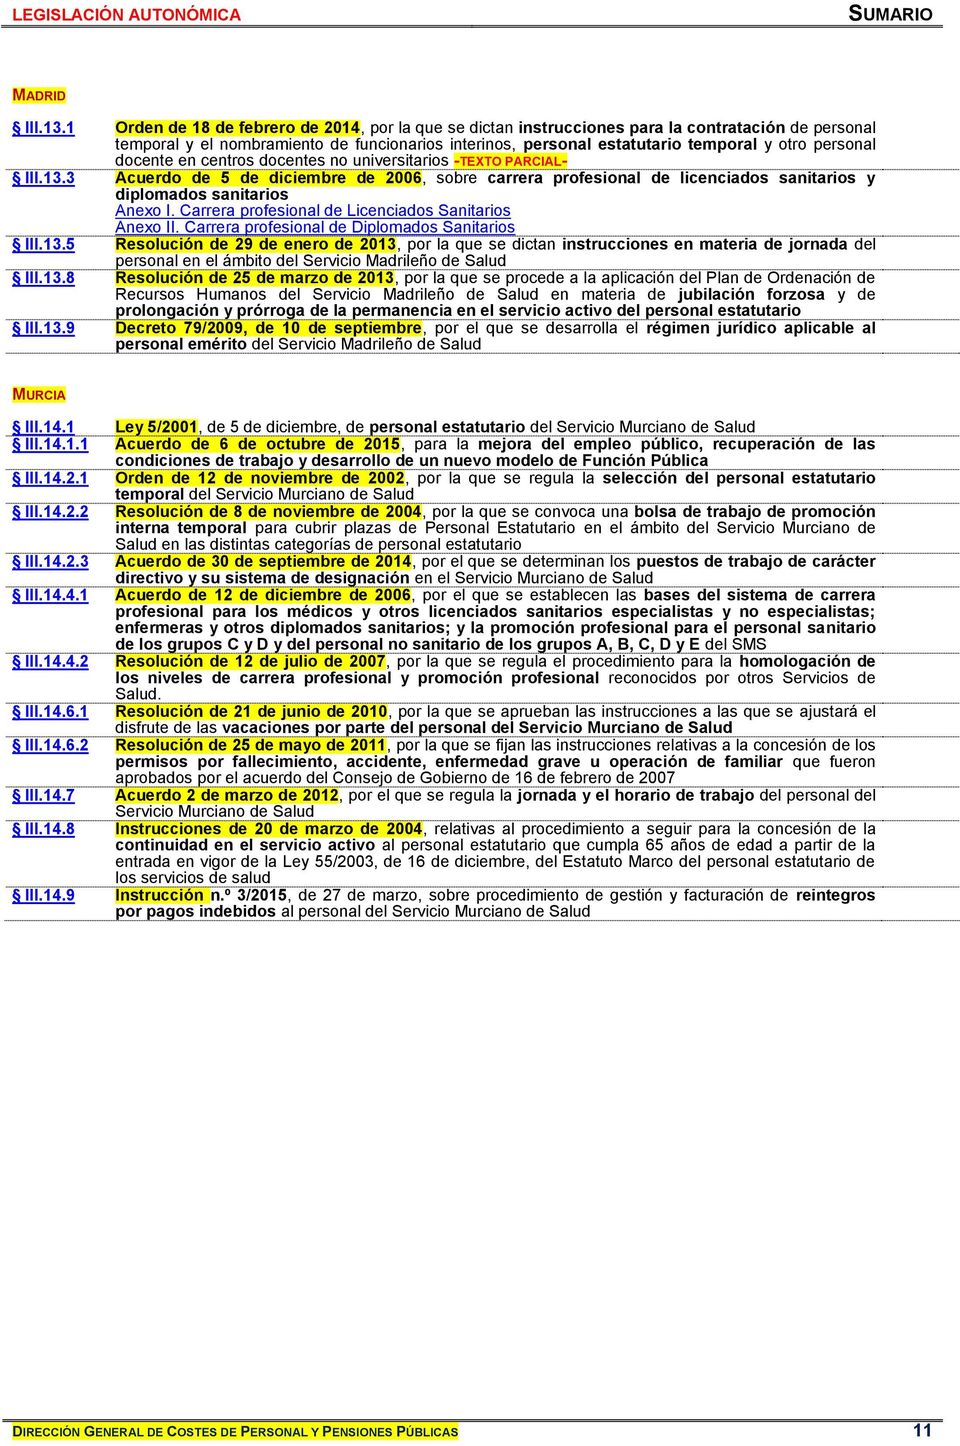 personal docente en centros docentes no universitarios -TEXTO PARCIAL- III.13.3 Acuerdo de 5 de diciembre de 2006, sobre carrera profesional de licenciados sanitarios y diplomados sanitarios Anexo I.